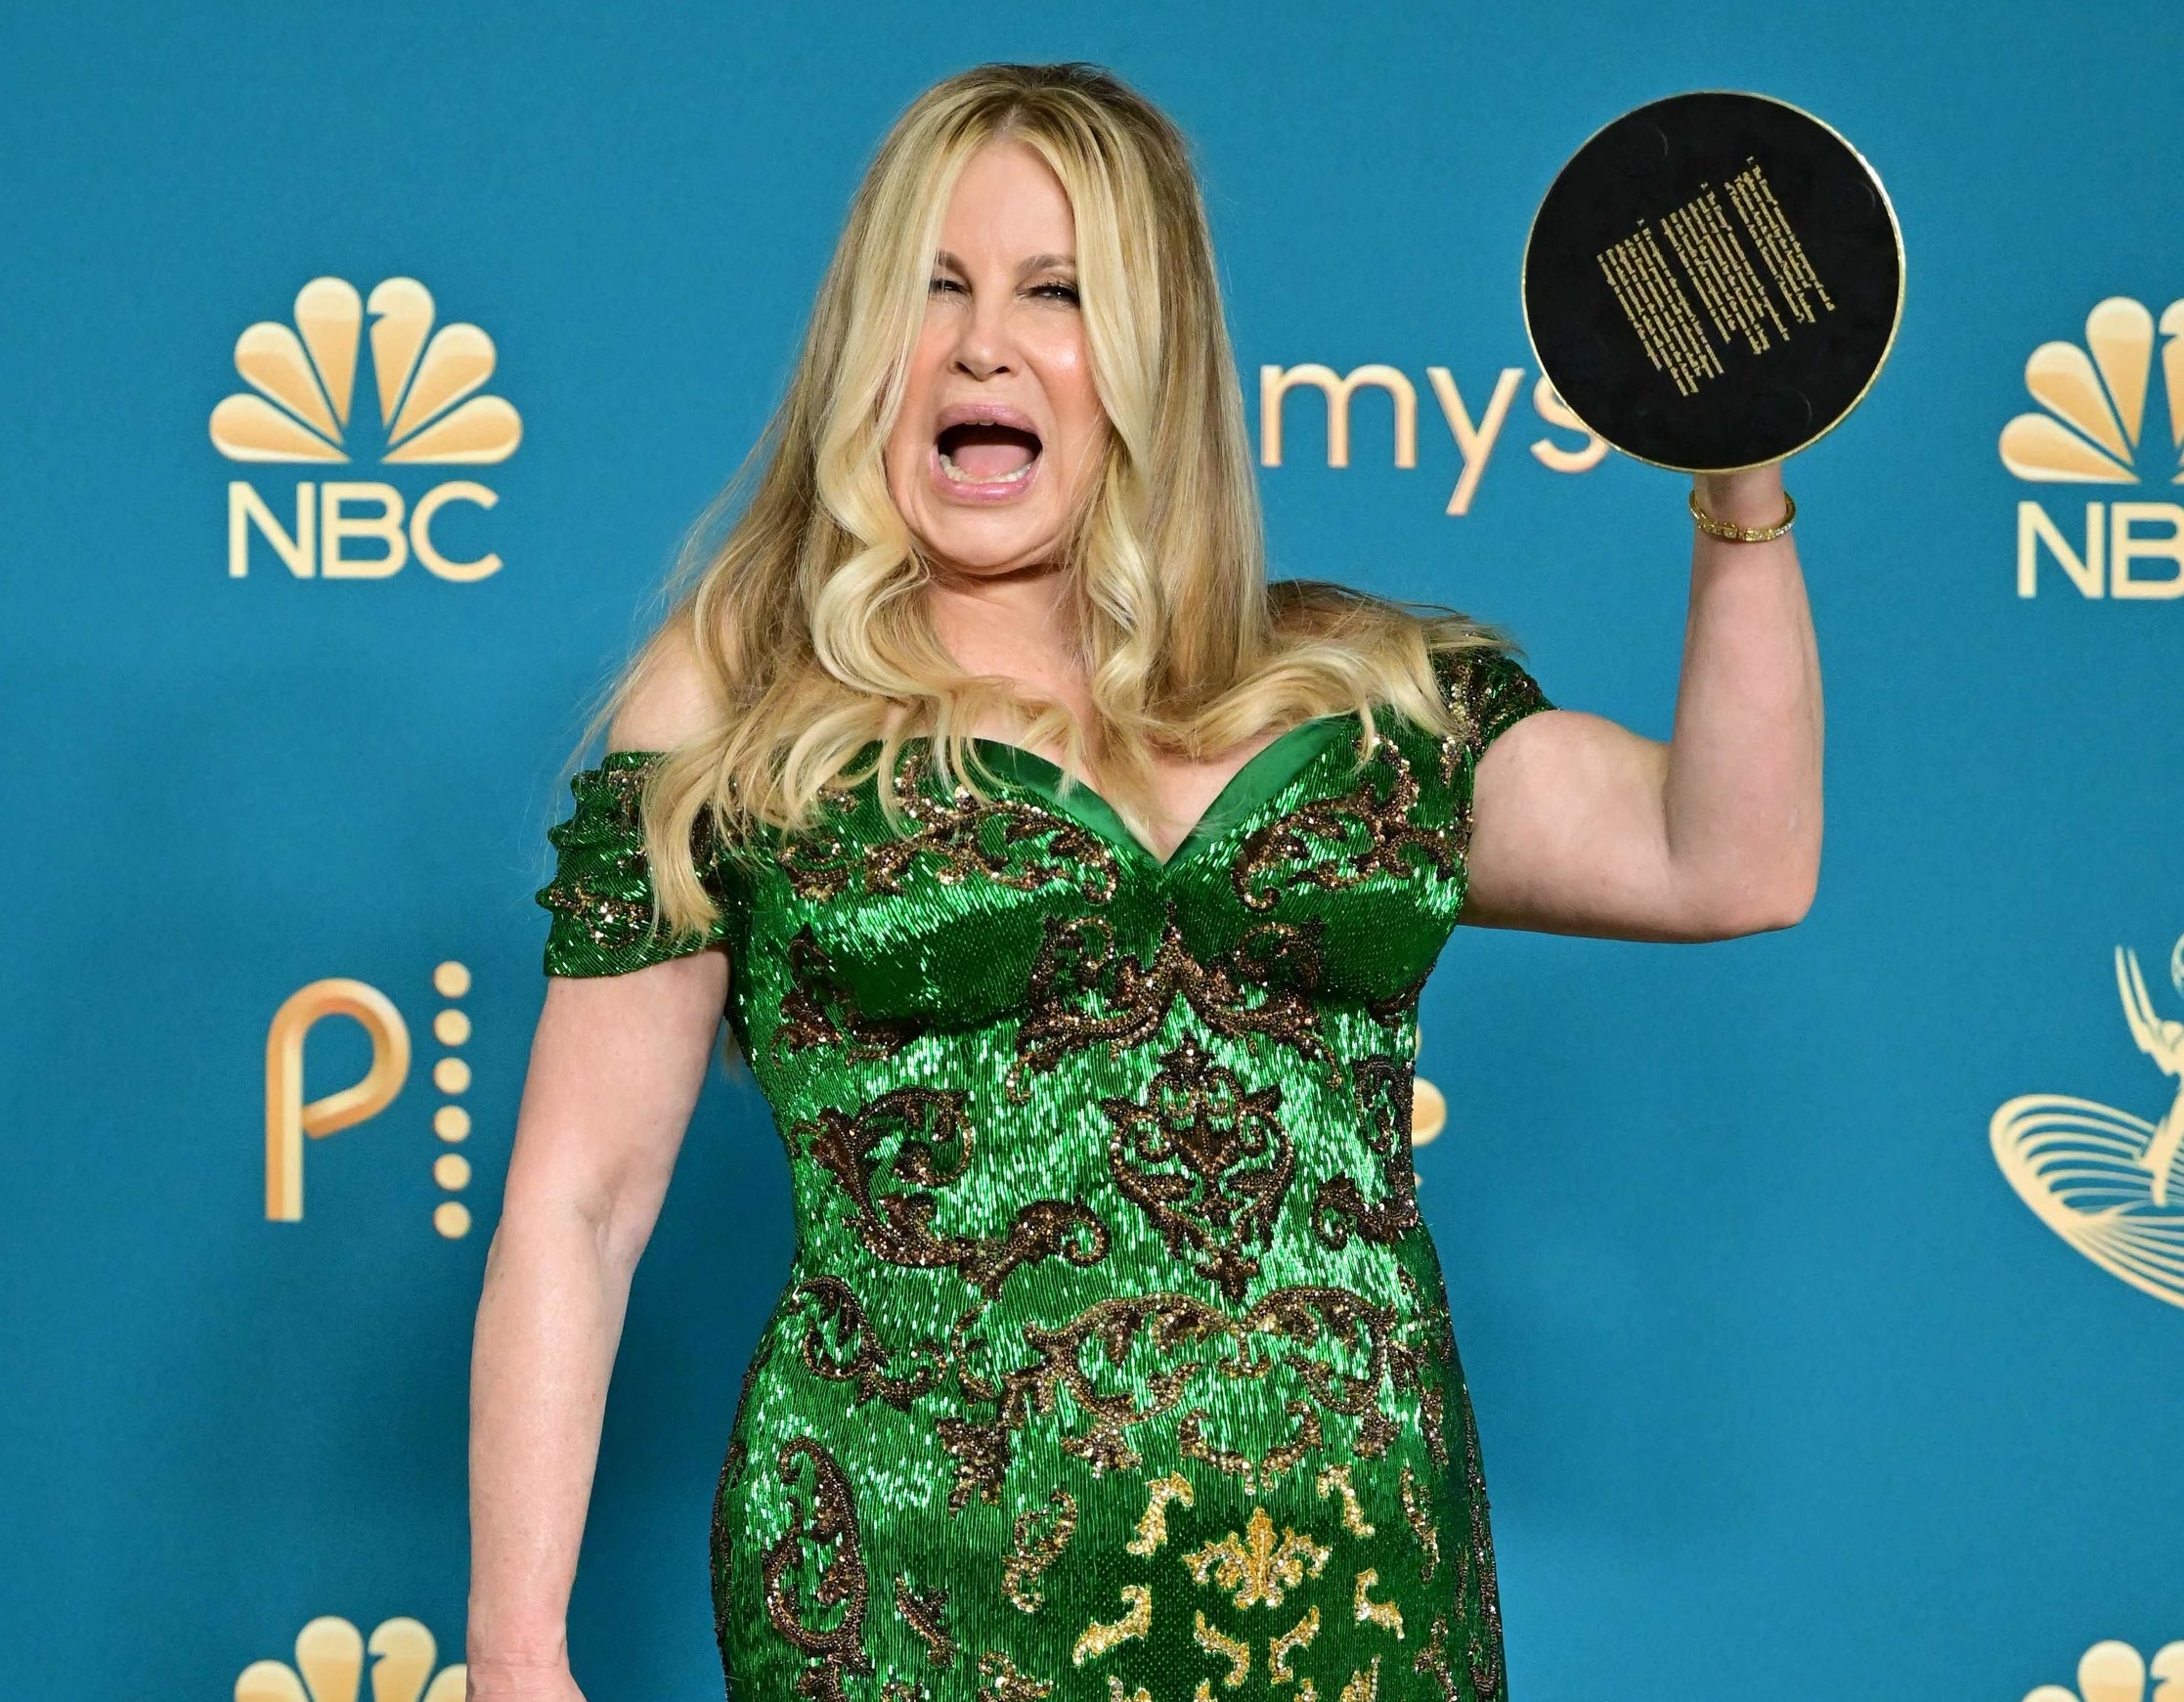 Jennifer holds up her award backstage